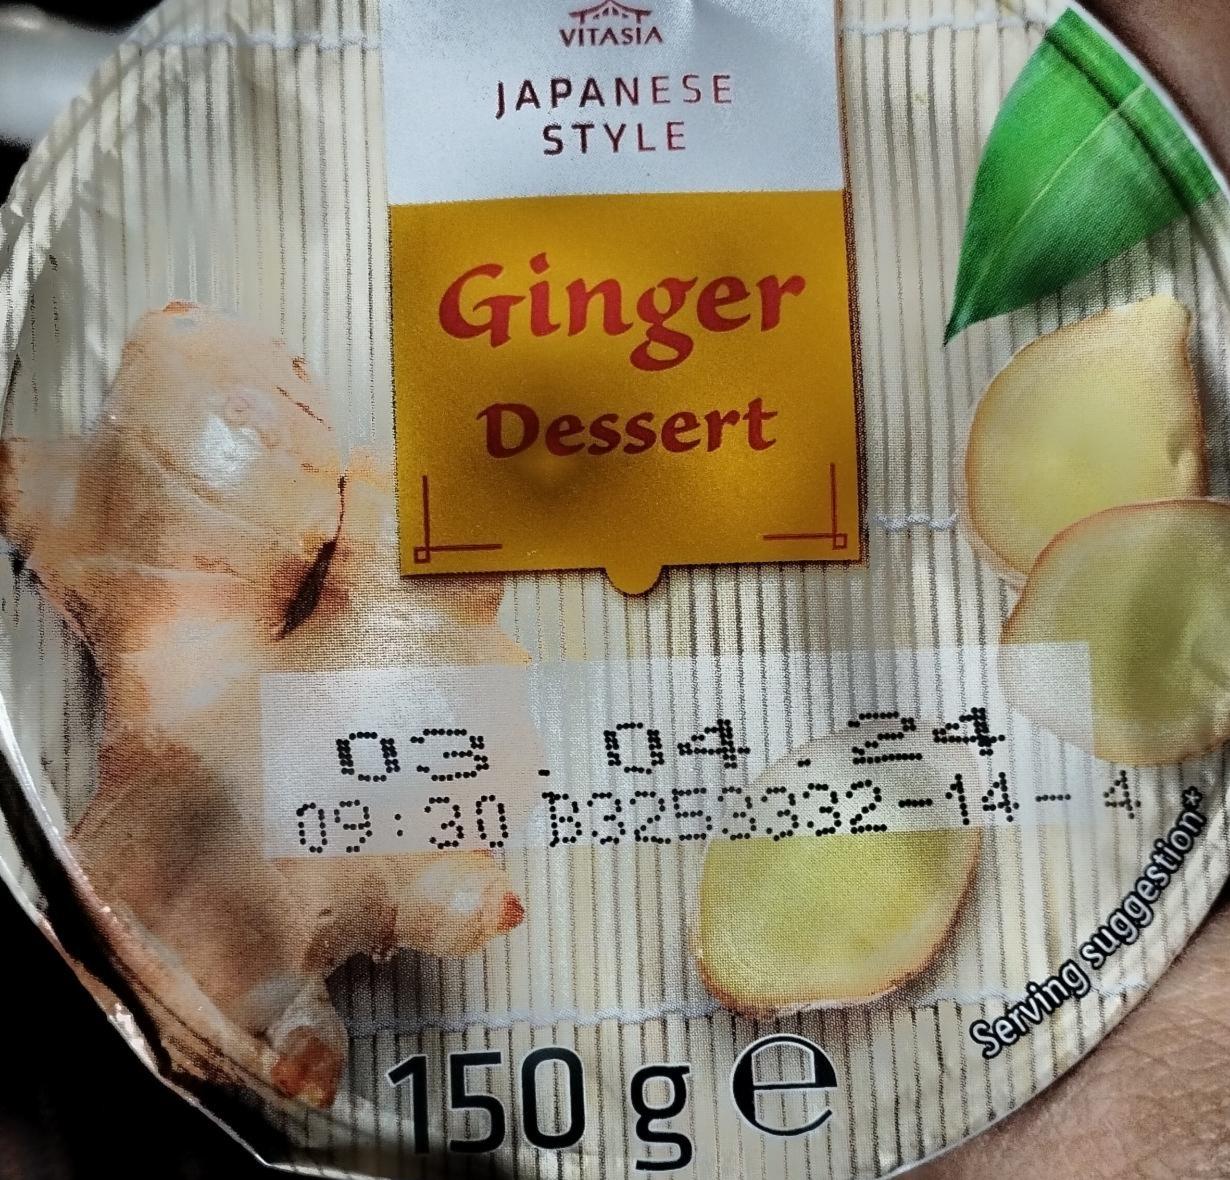 Fotografie - Japanese Style Ginger Dessert Vitasia